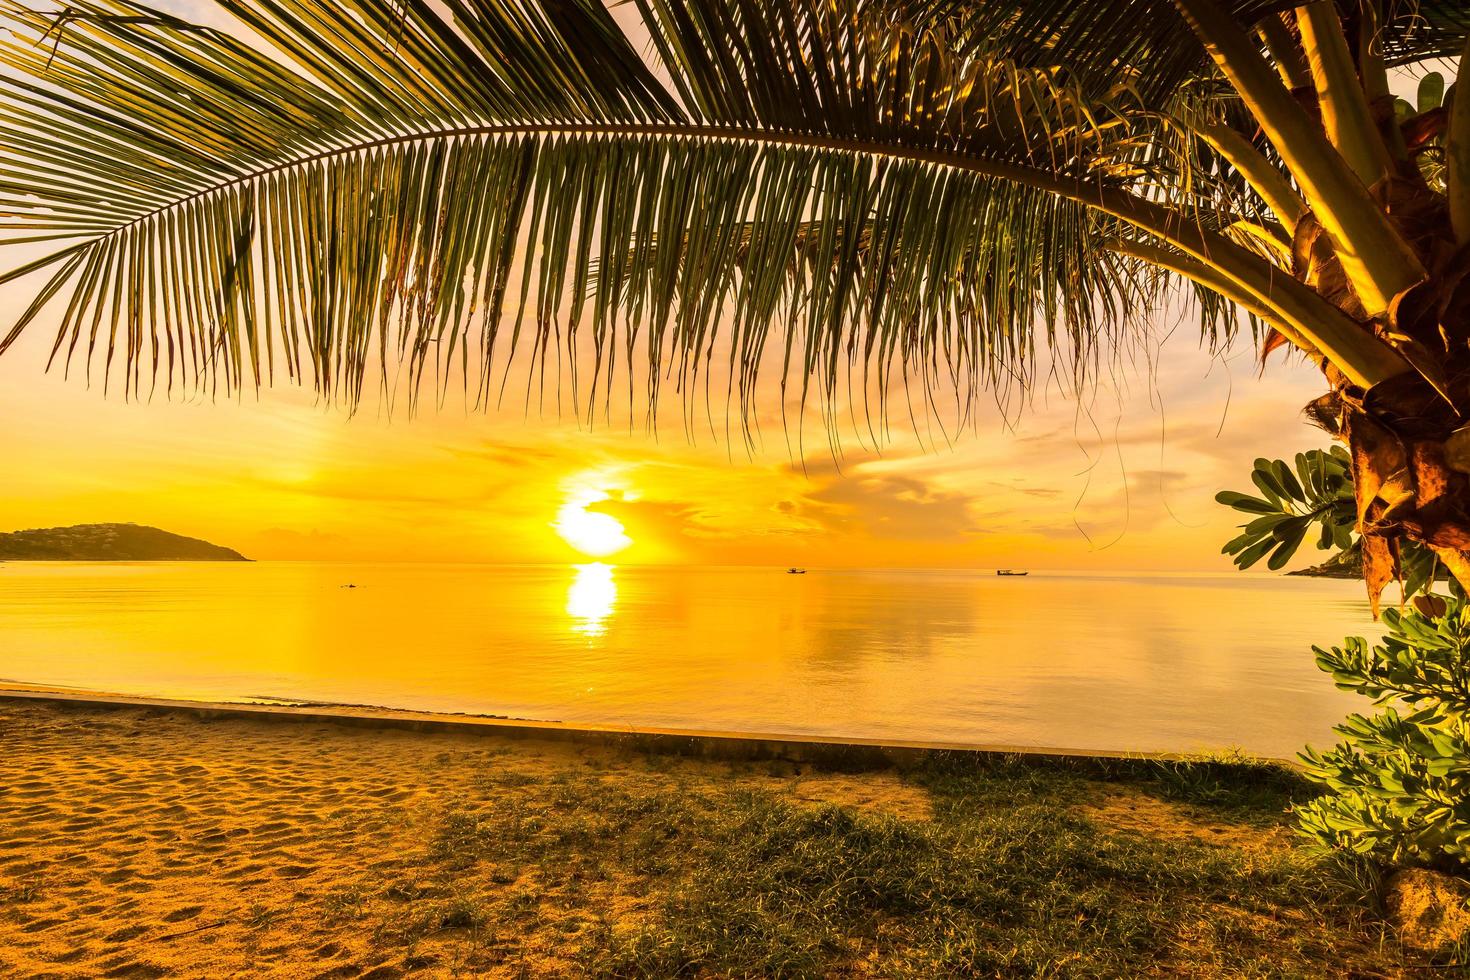 puesta de sol en la playa tropical foto